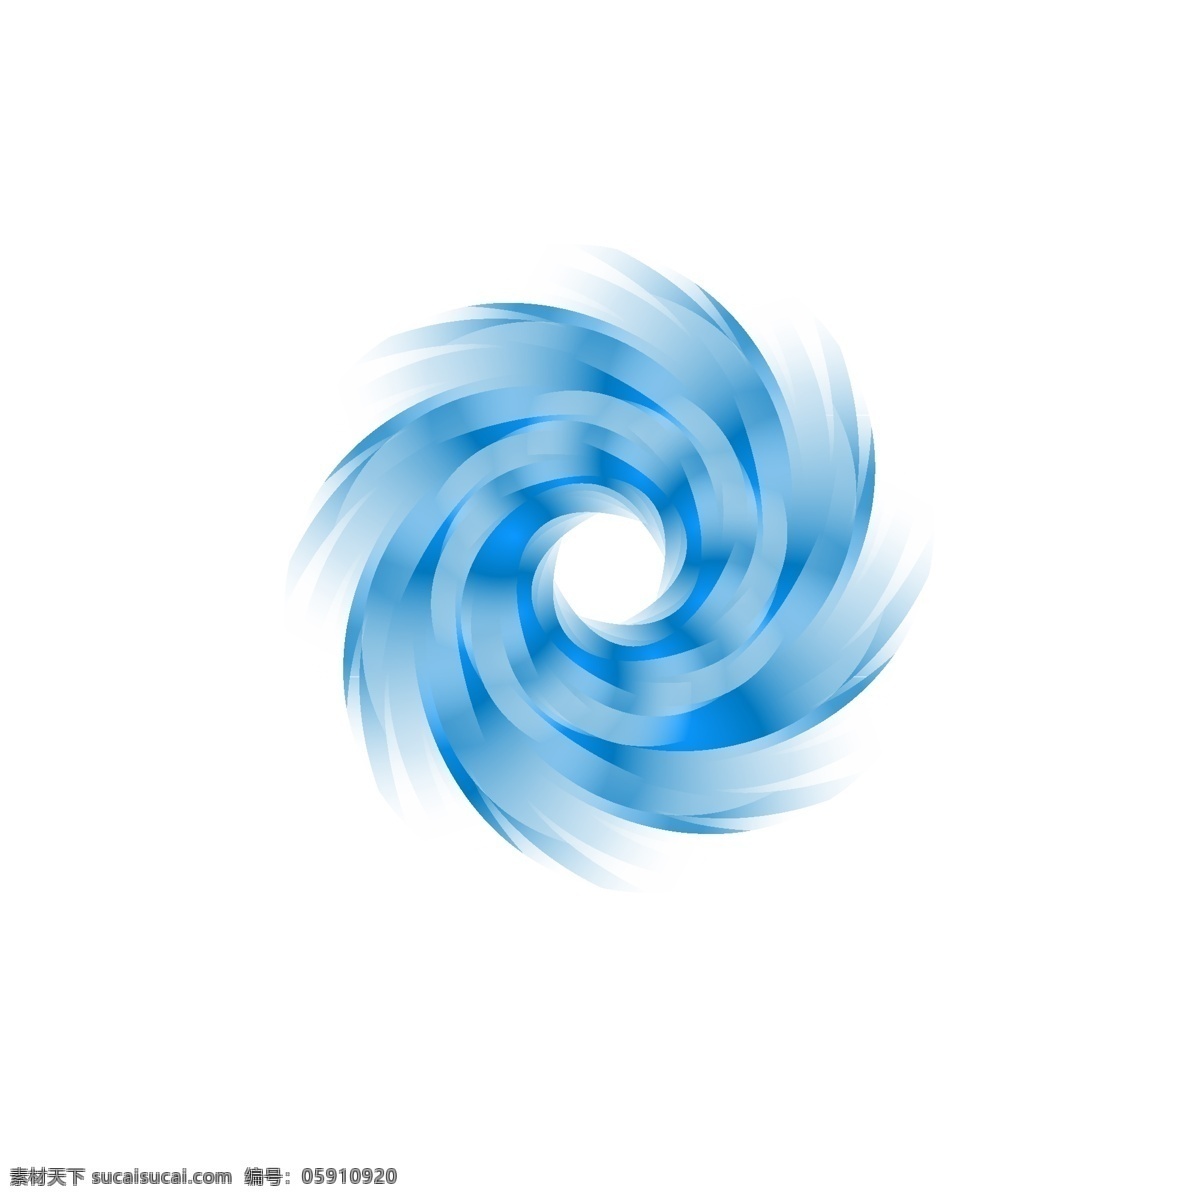 矢量旋风图案 圆管 几何 线条 矢量 抽象 旋风 图案 标志图标 其他图标